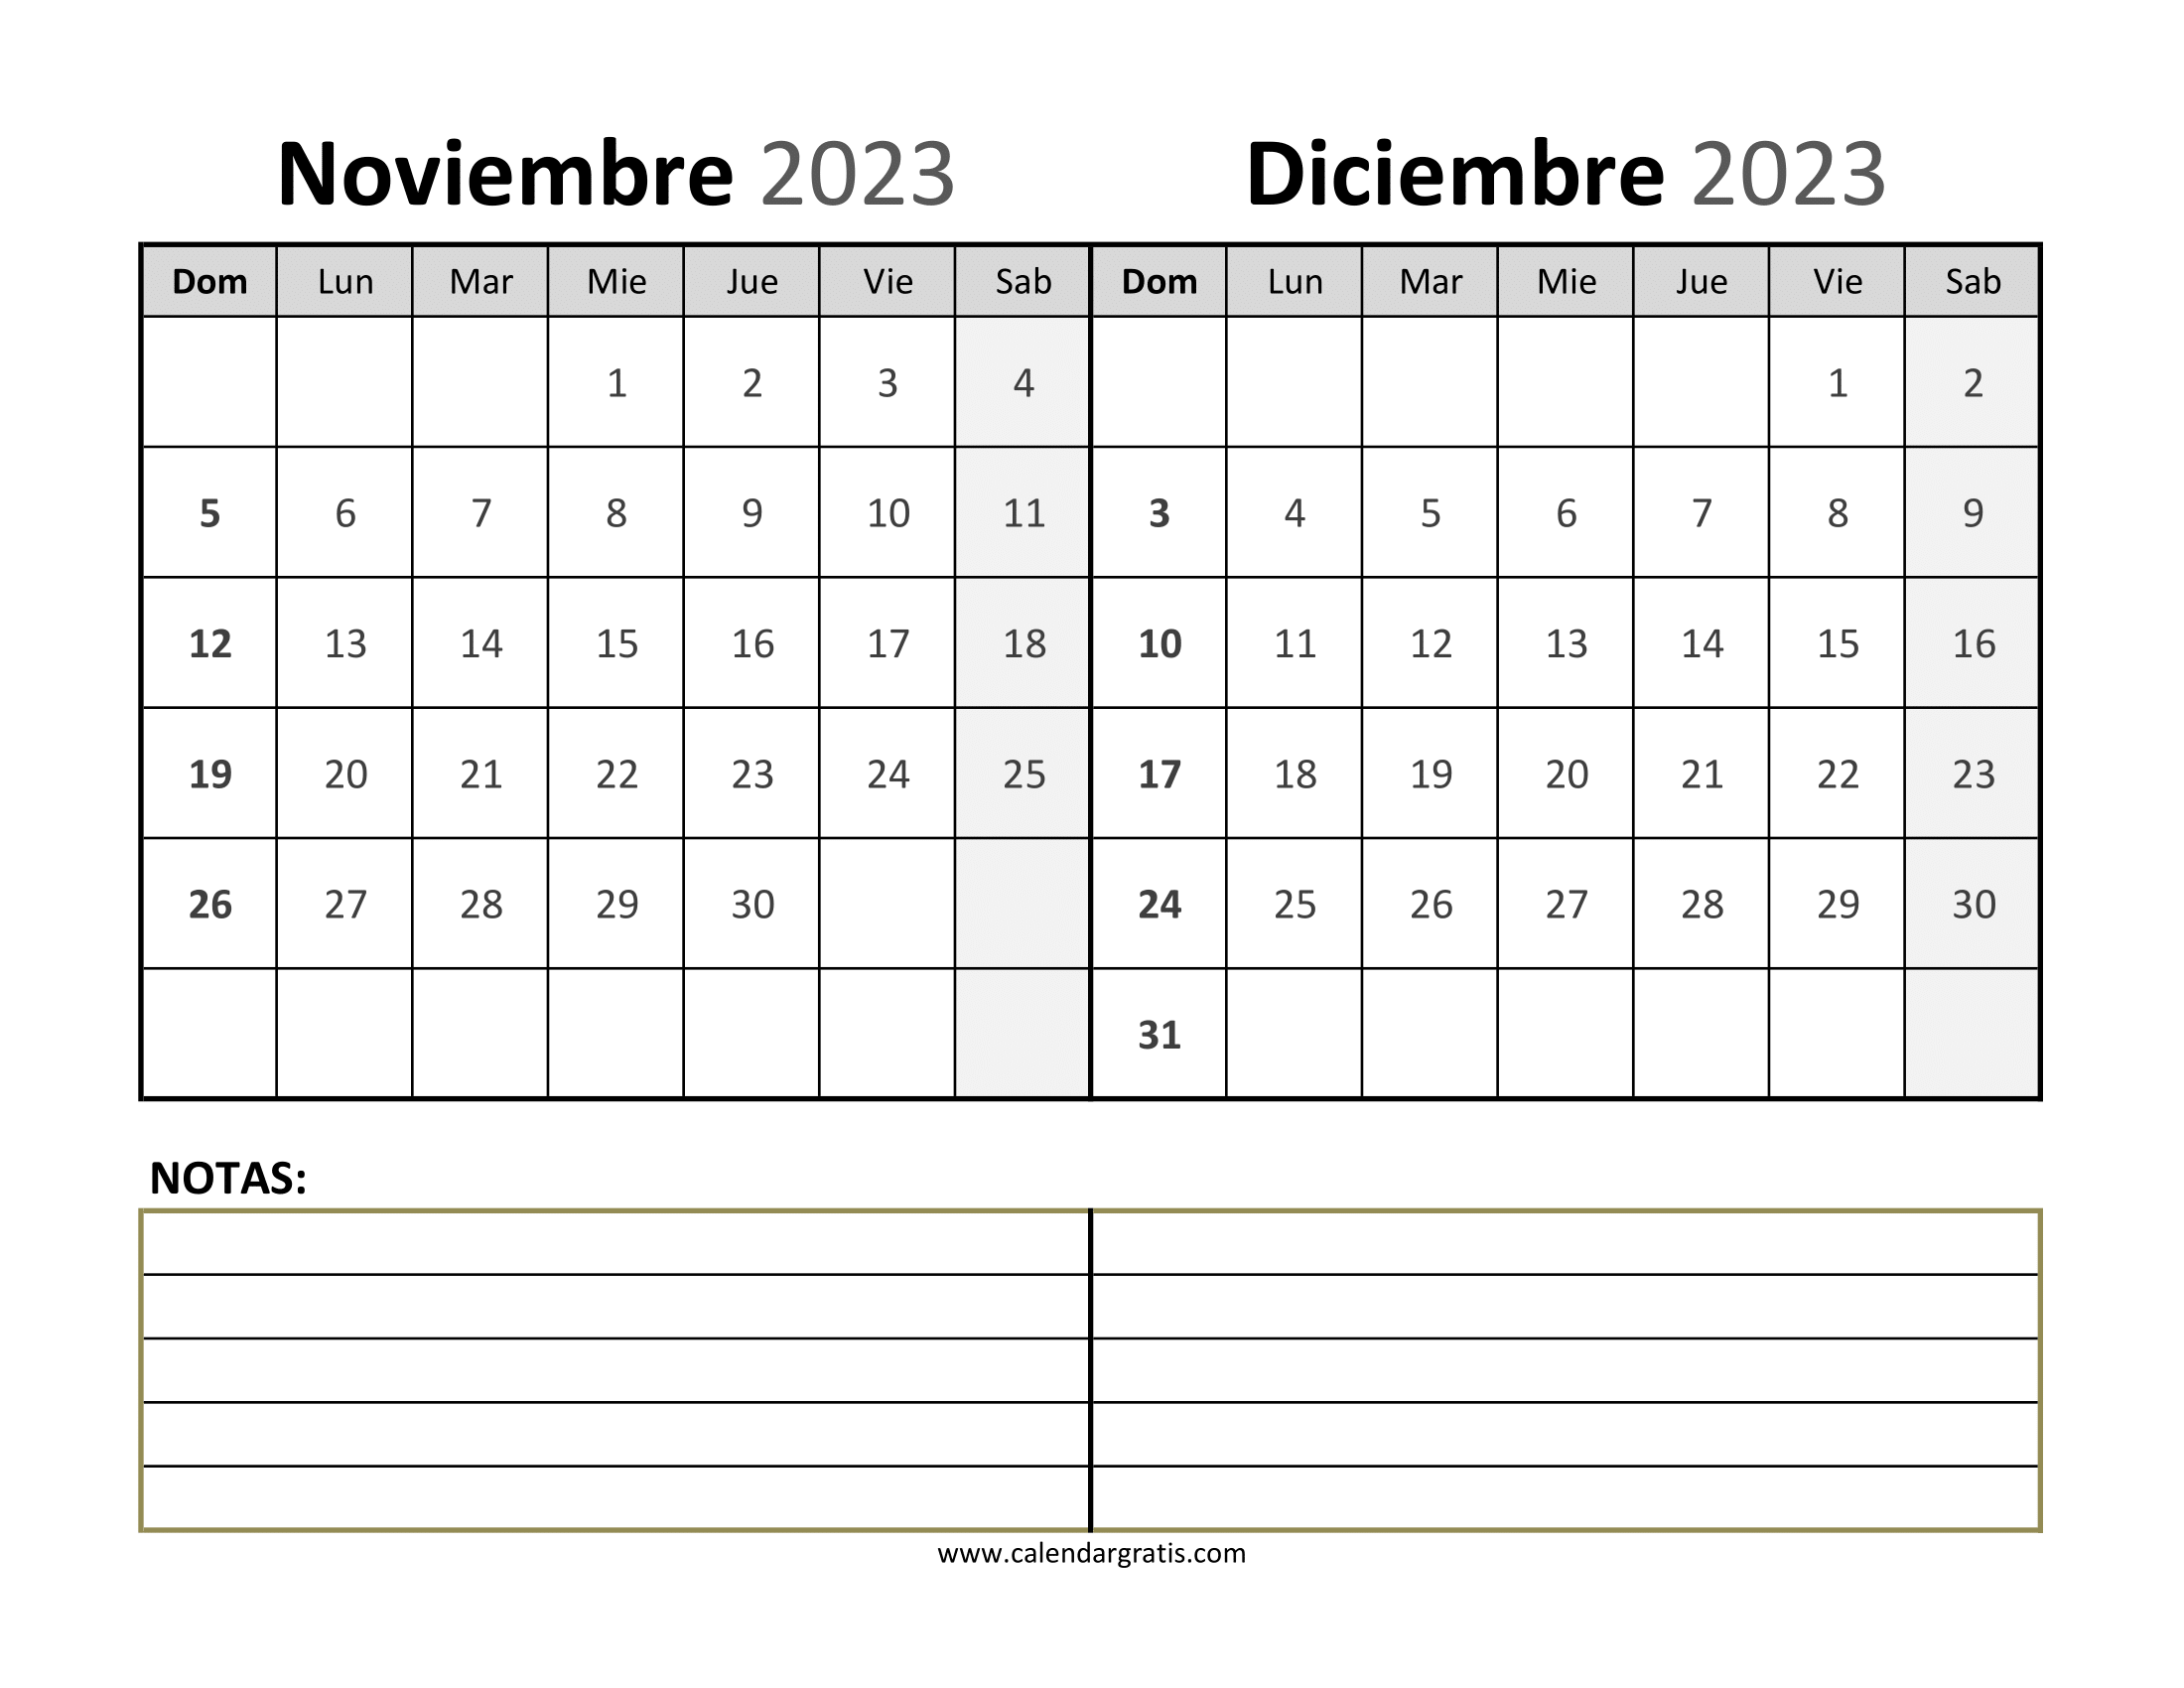 Calendarios y planificadores imprimibles para noviembre y diciembre 2023